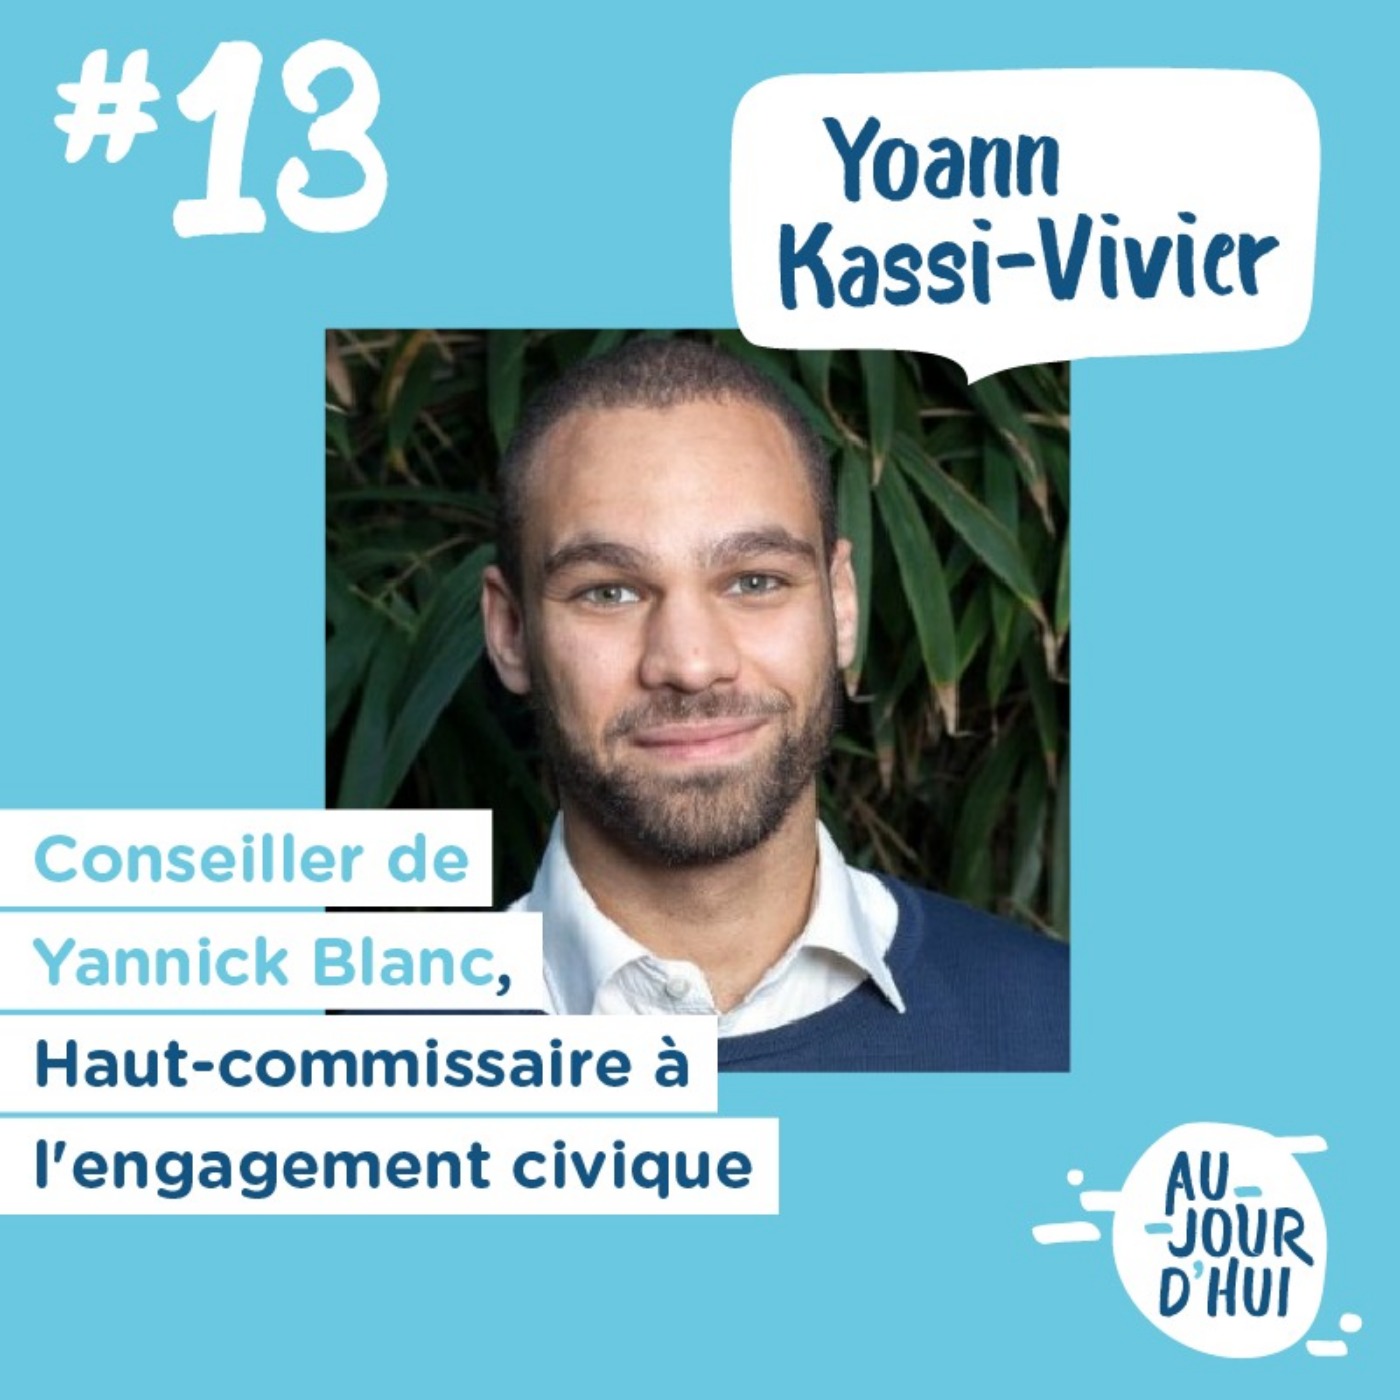 #13 Yoann Kassi-Vivier (Haut Commissariat à l’engagement civique) : “Se rendre utile, c’est trouver sa place dans la société”